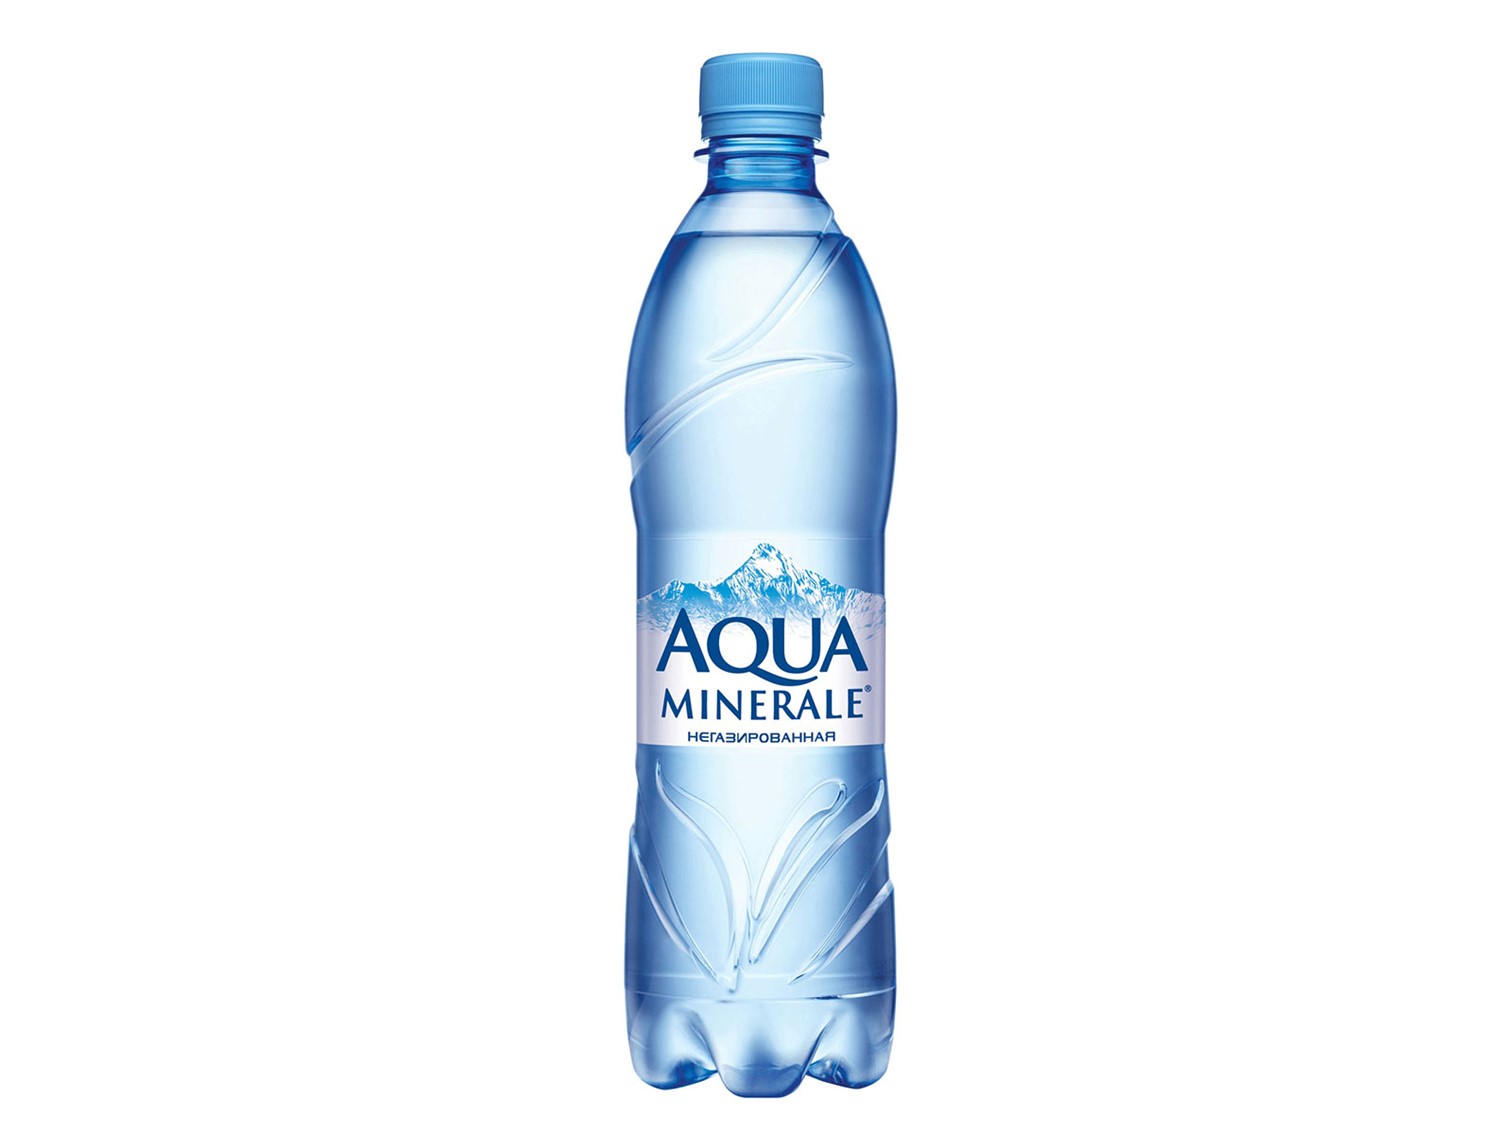 Бутылка негазированной воды. Вода Аква Минерале негазированная. Аква Минерале негазированная 2л. Вода питьевая Аква Минерале ГАЗ 2л. Вода питьевая Aqua minerale негазированная 5 л.